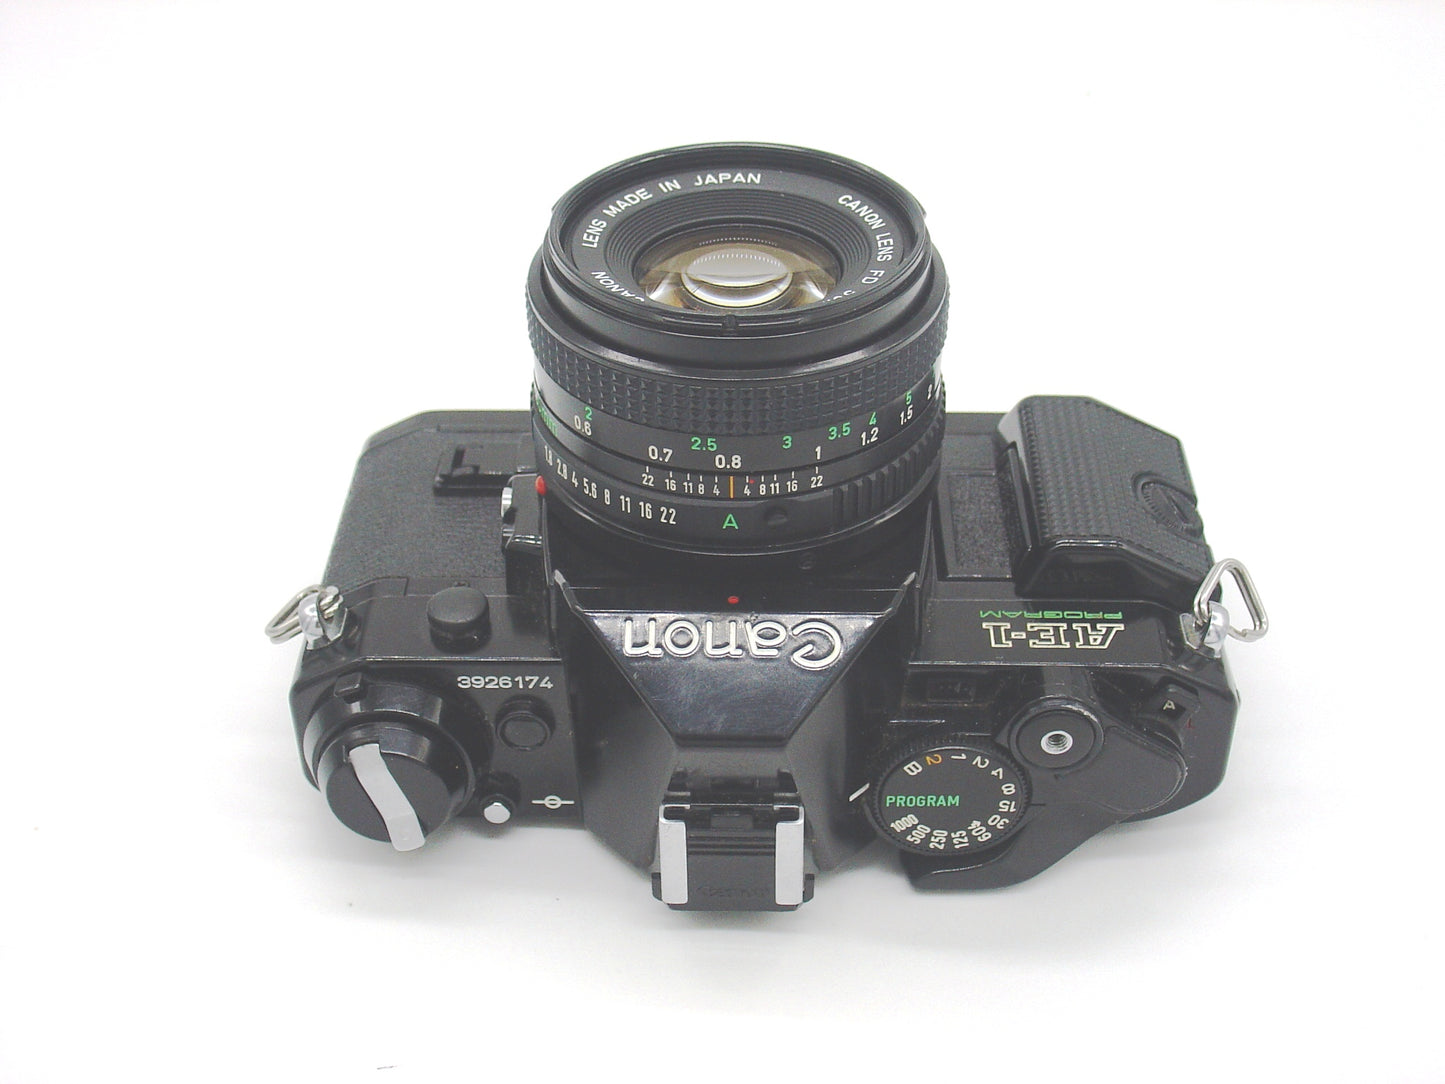 Canon AE-1 Program SLR camera - silver or black